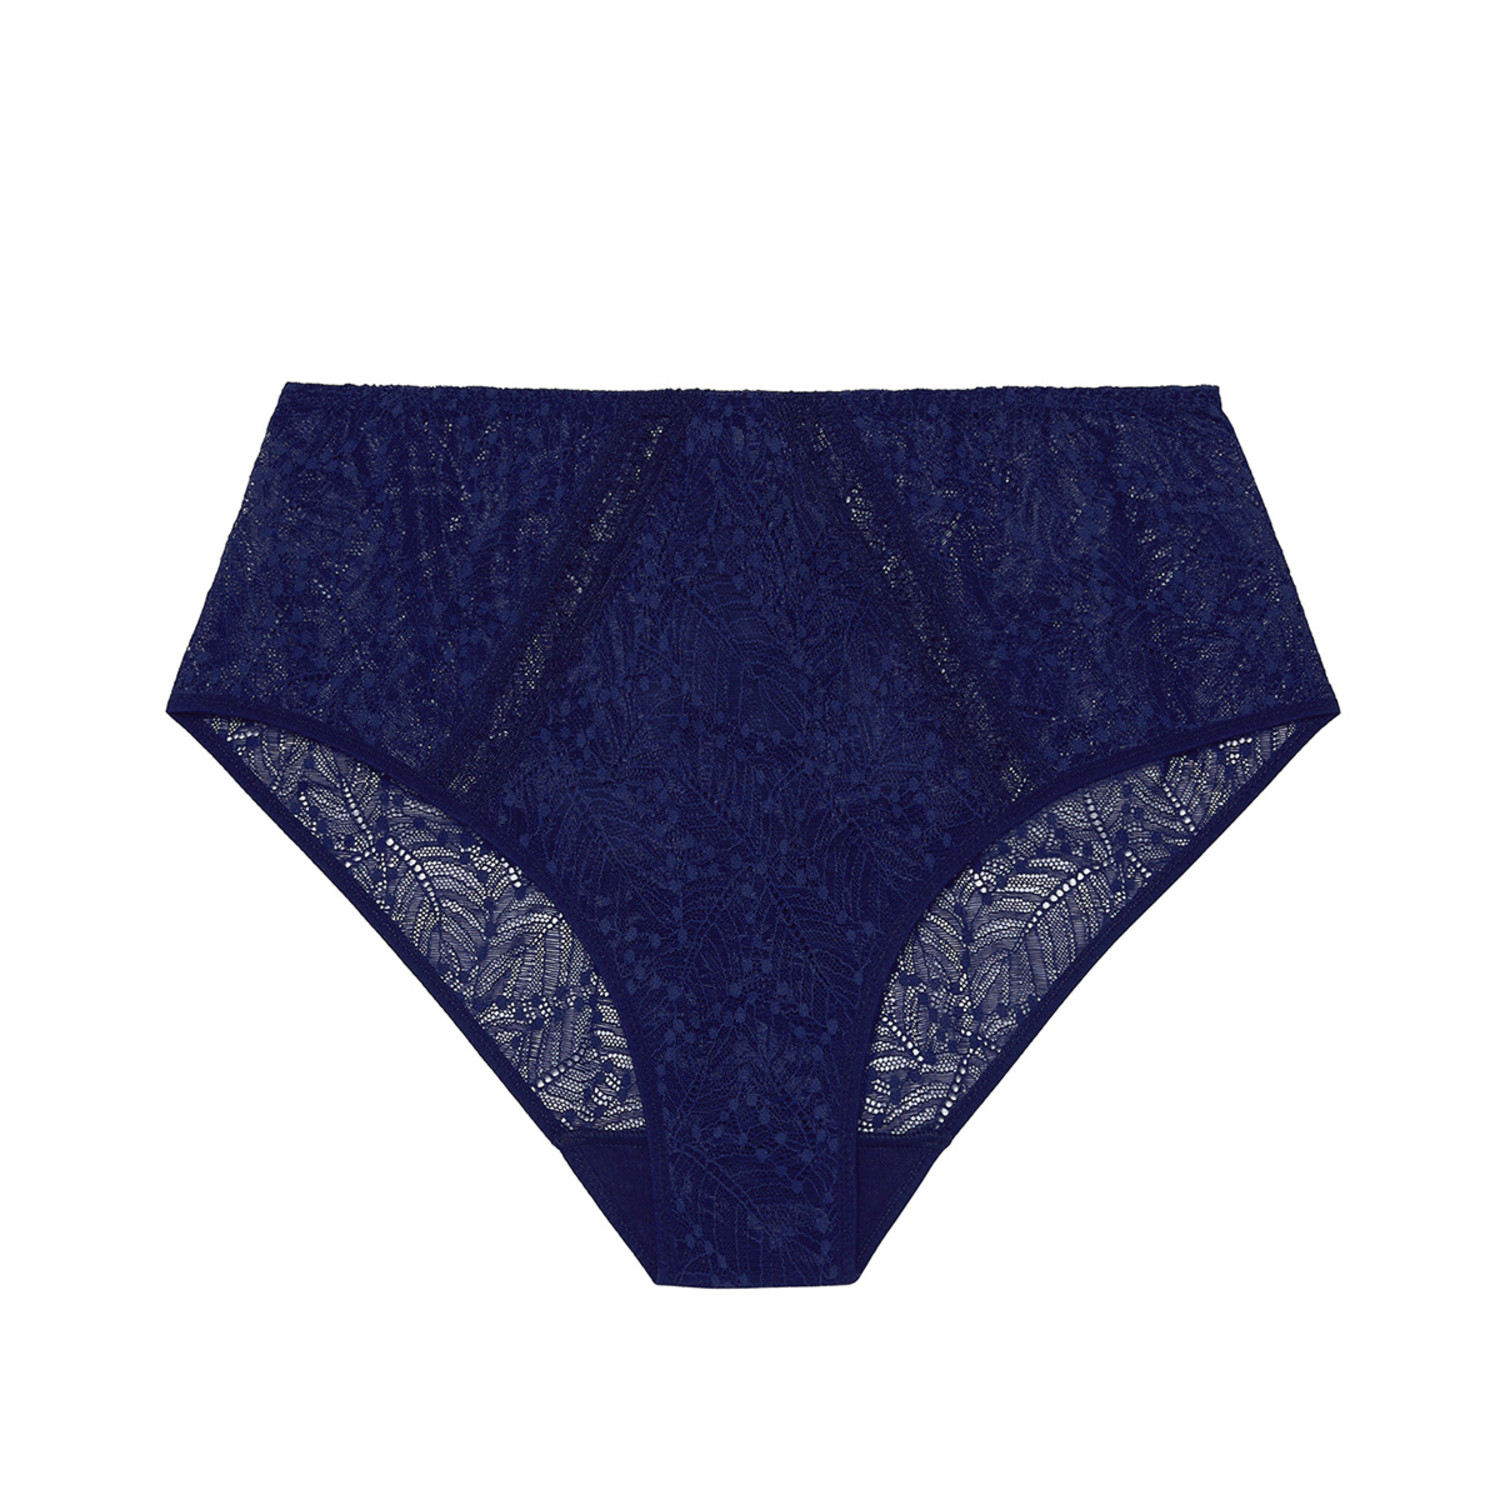 Comete Retro Brief Panty Black 12S770 - Lace & Day